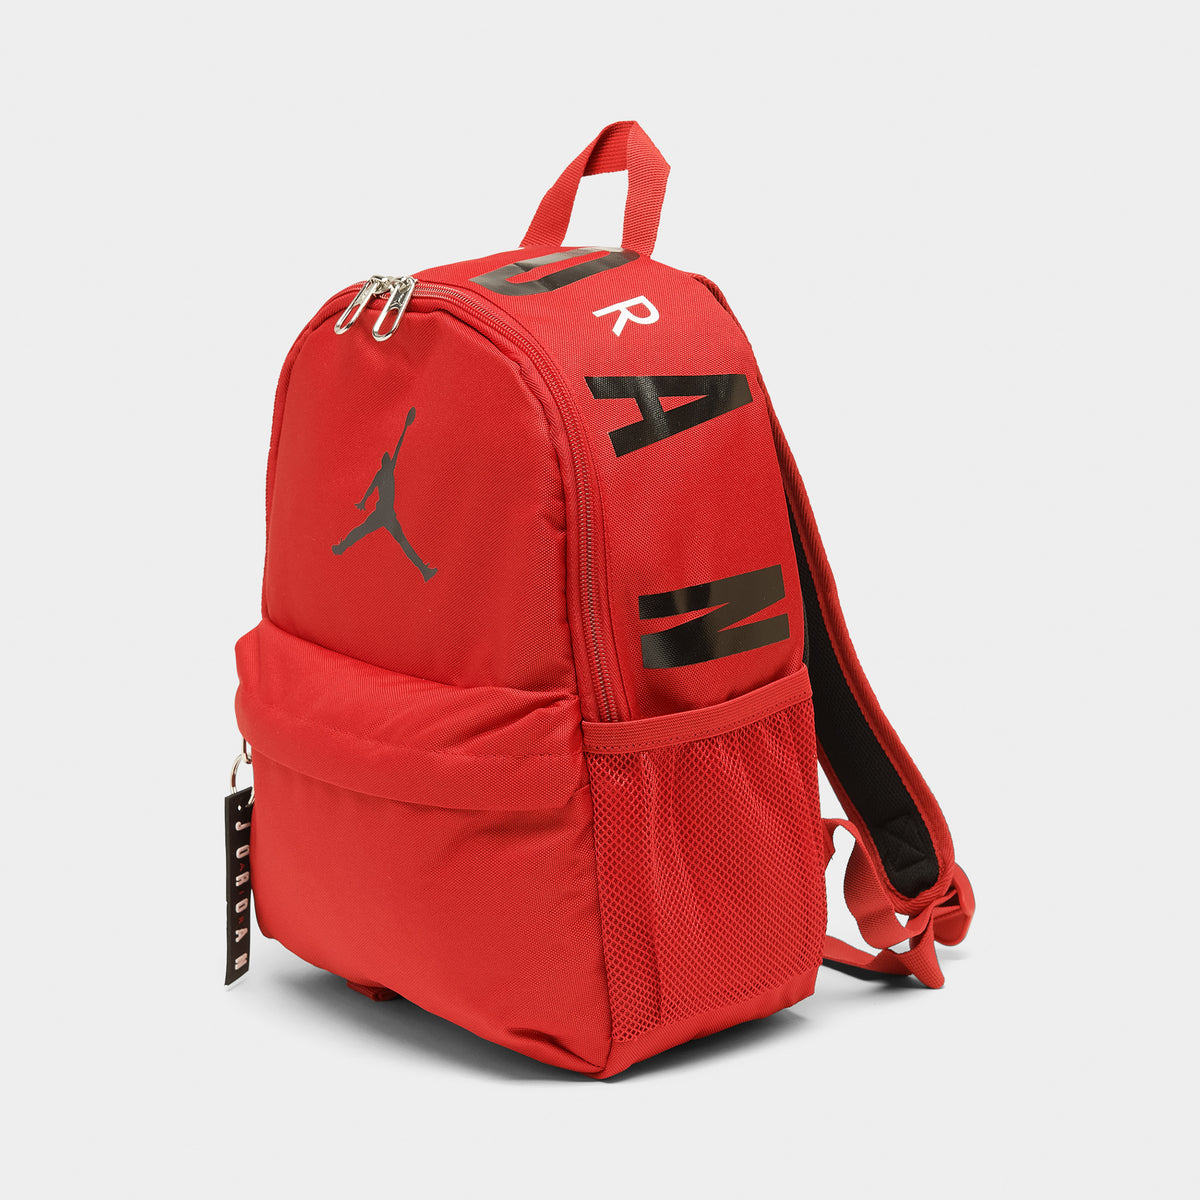 jordan backpack canada